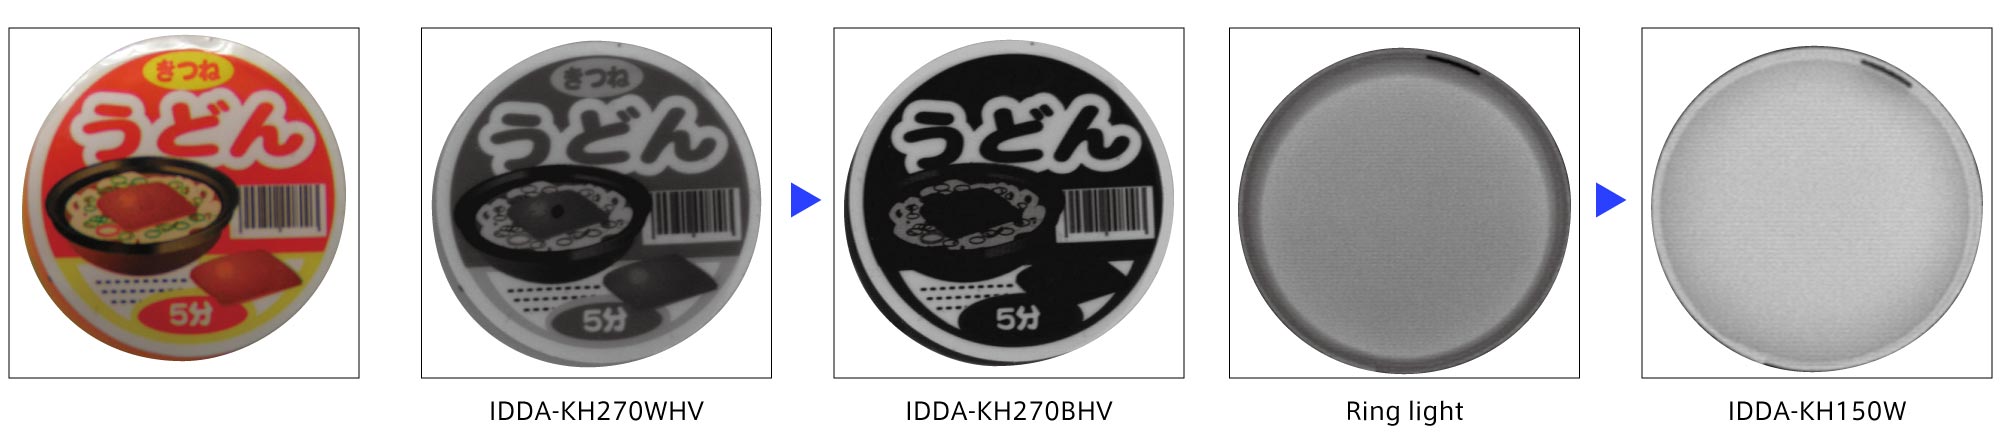 IDDA-KH Product Description 02